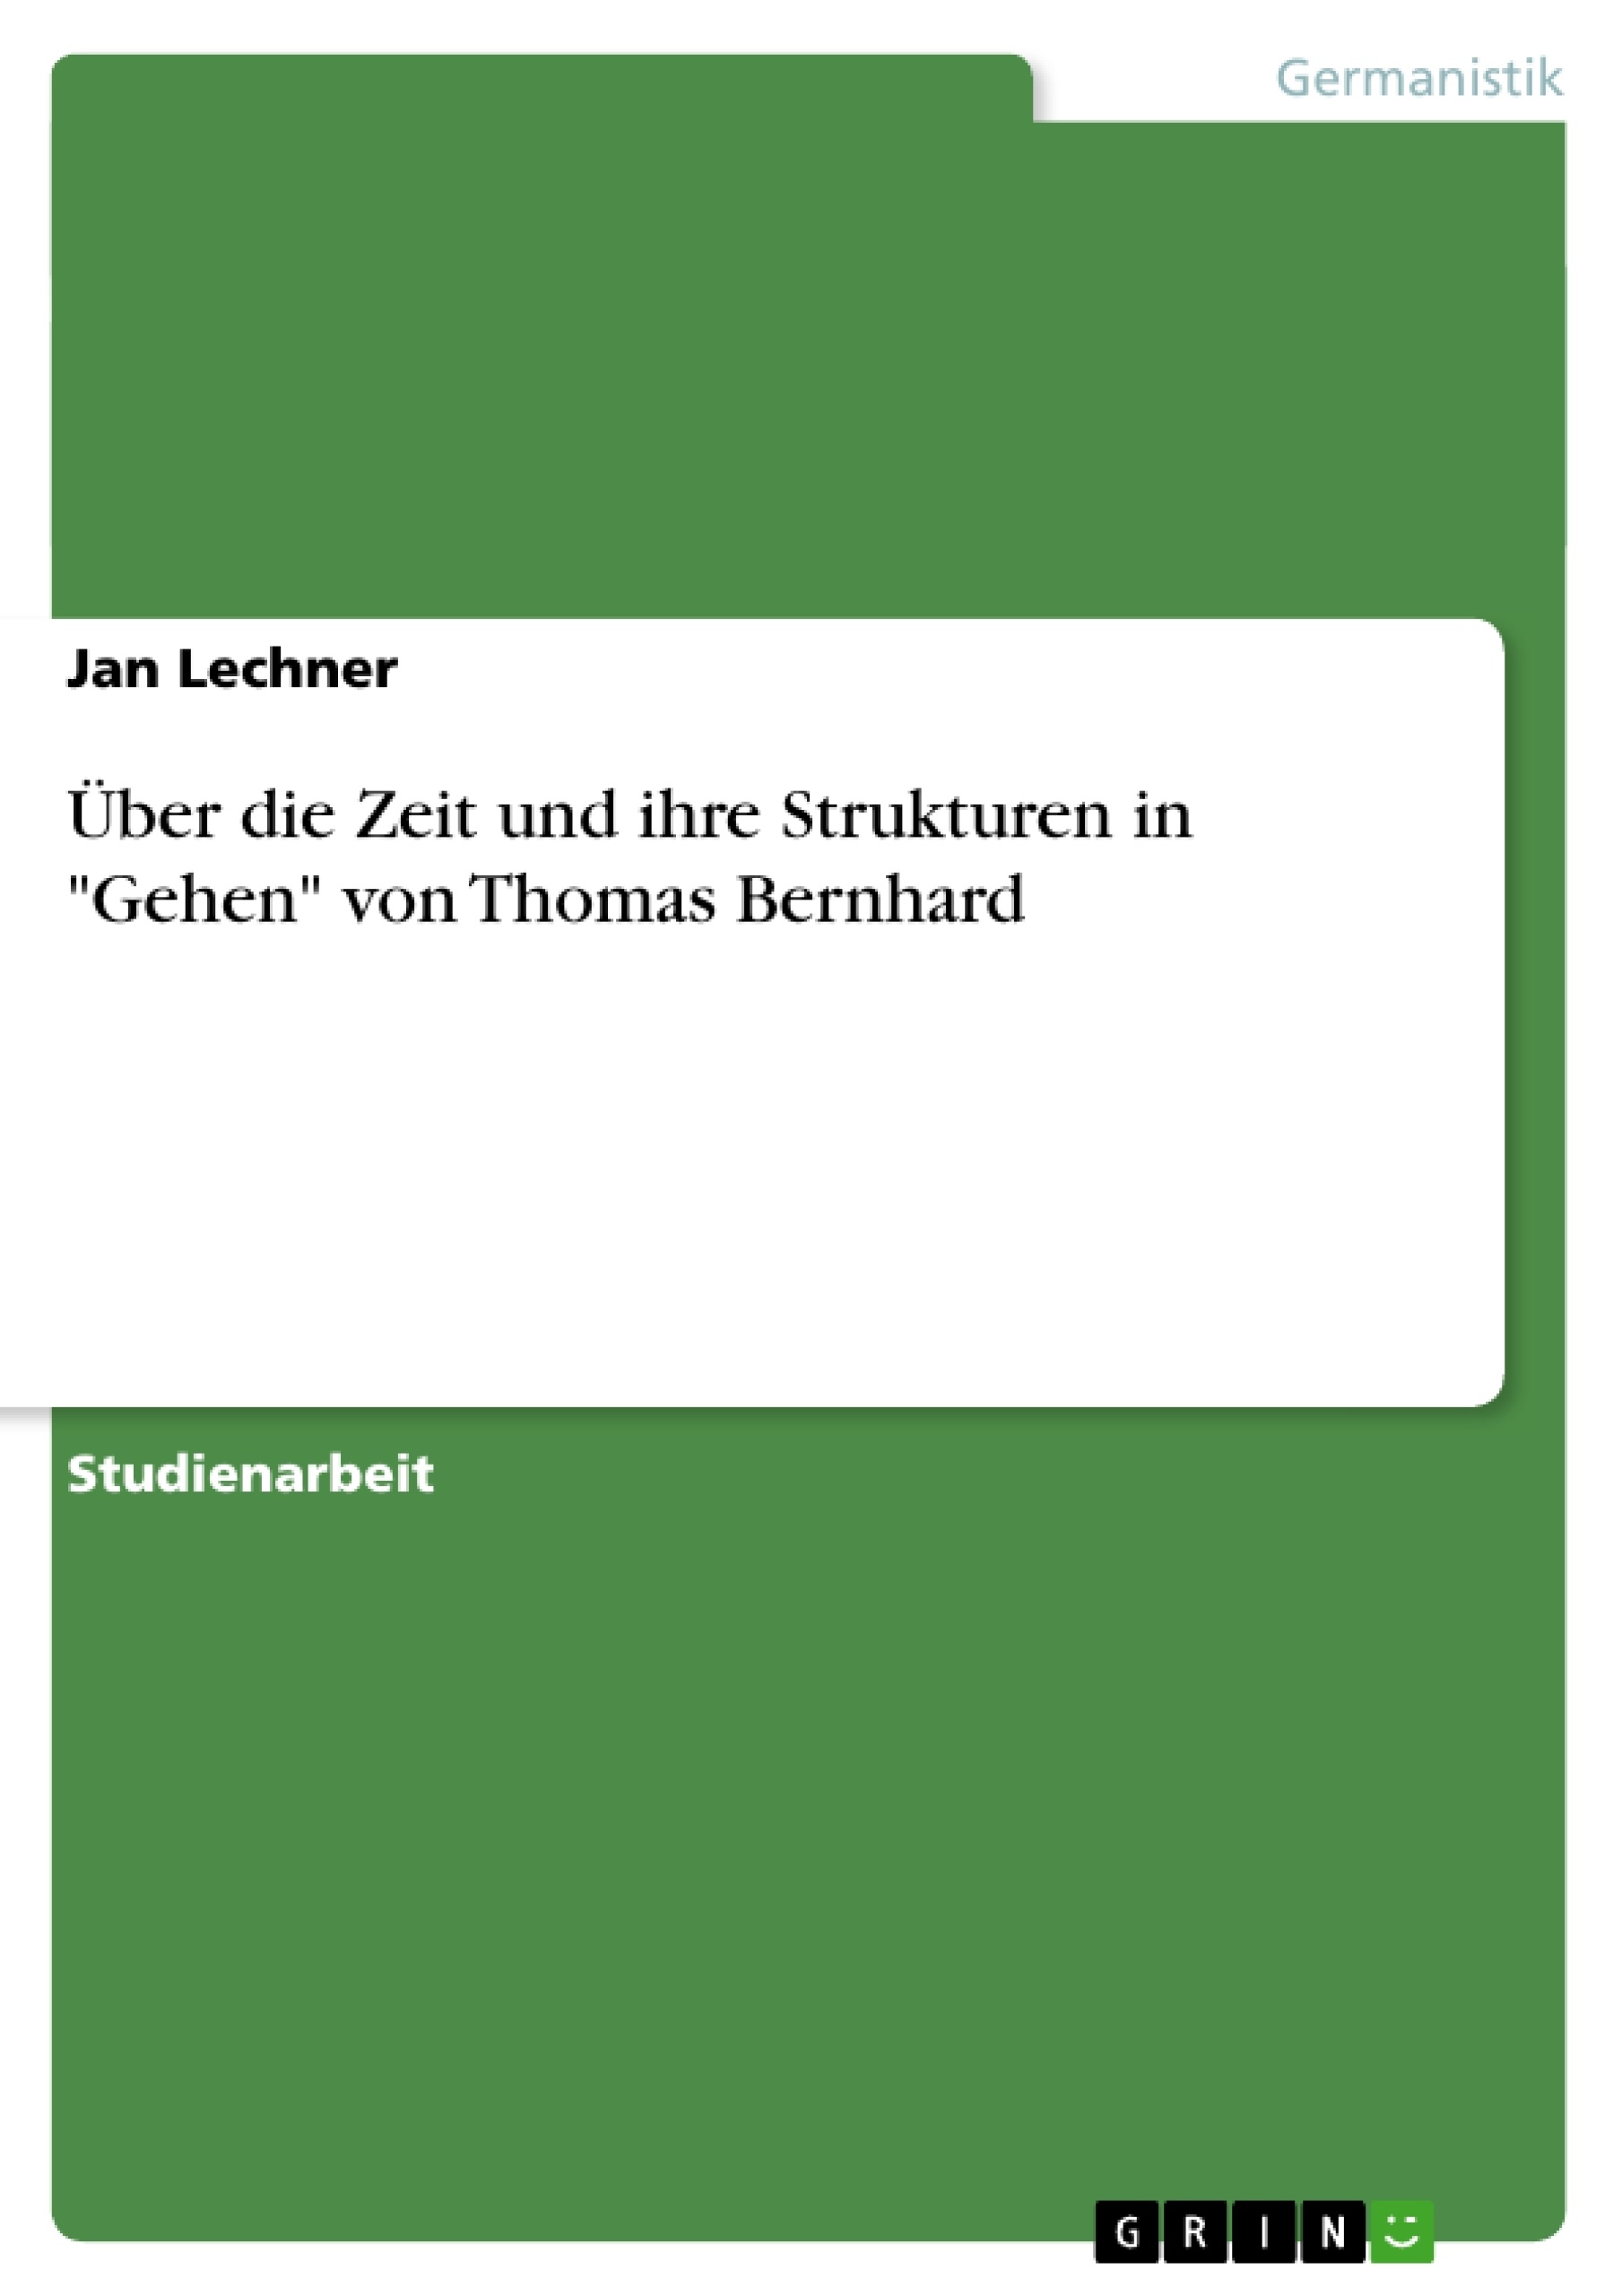 Titre: Über die Zeit und ihre Strukturen in "Gehen" von Thomas Bernhard